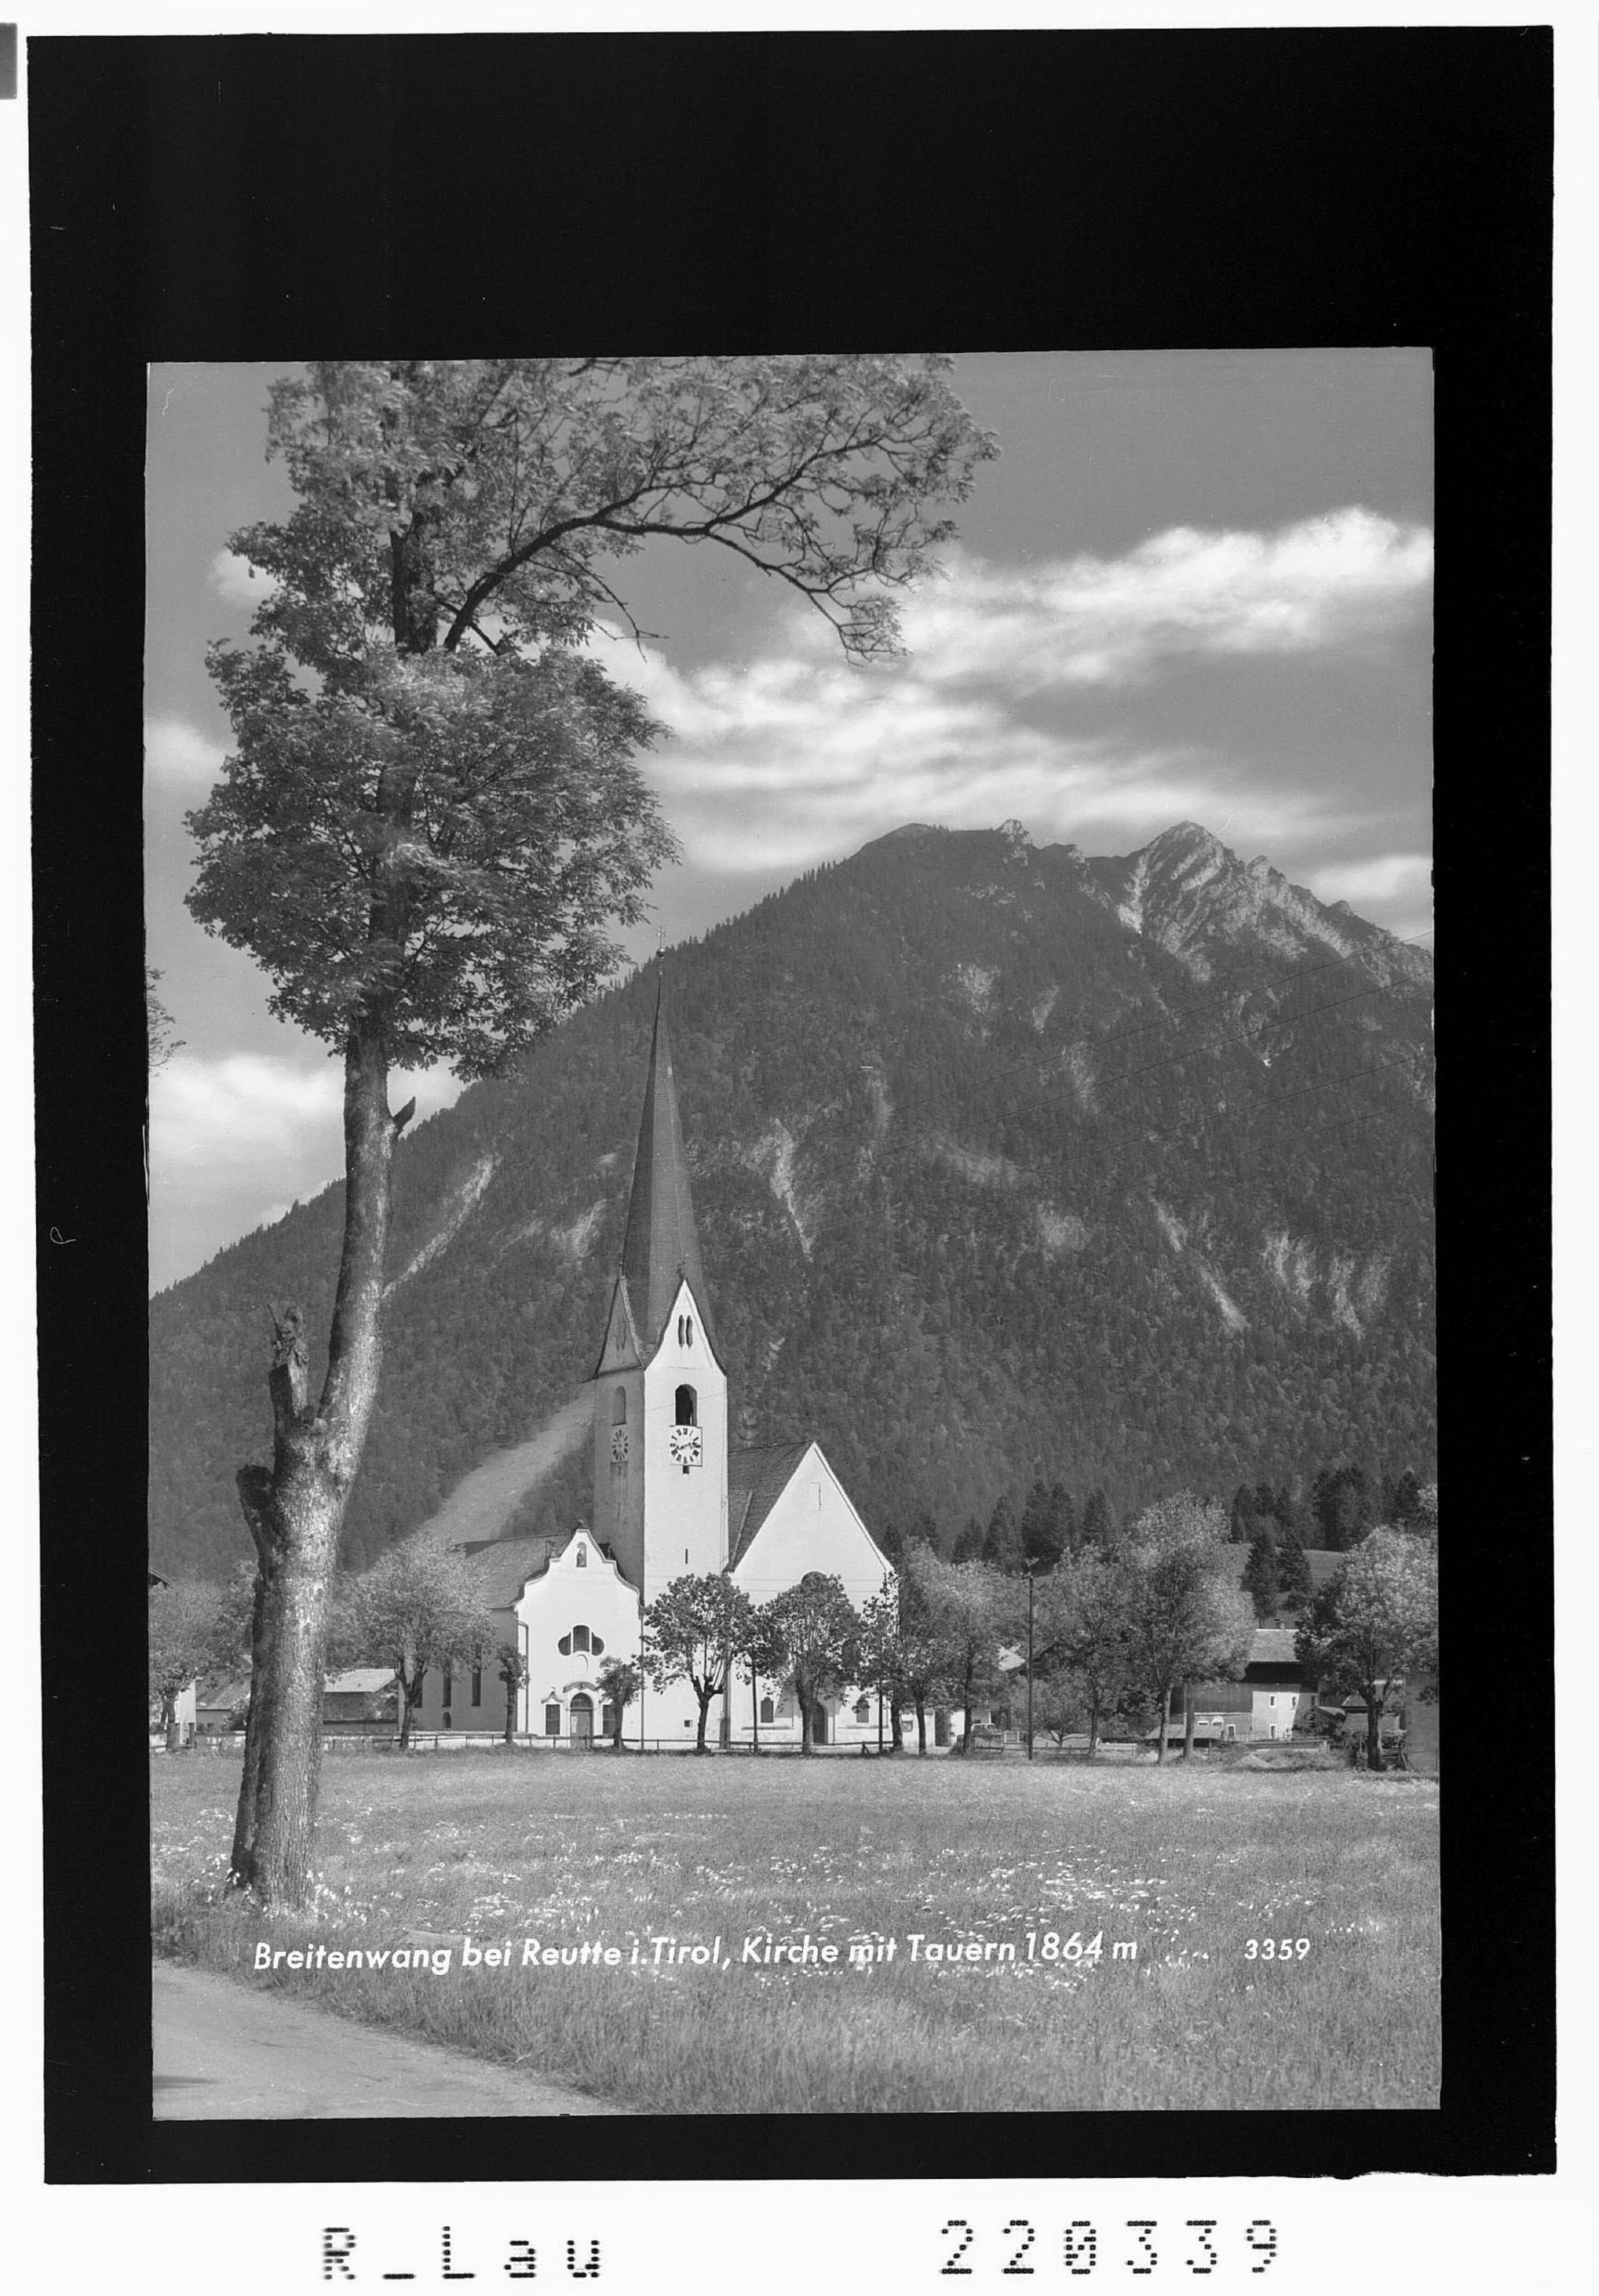 Breitenwang bei Reutte in Tirol / Kirche mit Tauern></div>


    <hr>
    <div class=